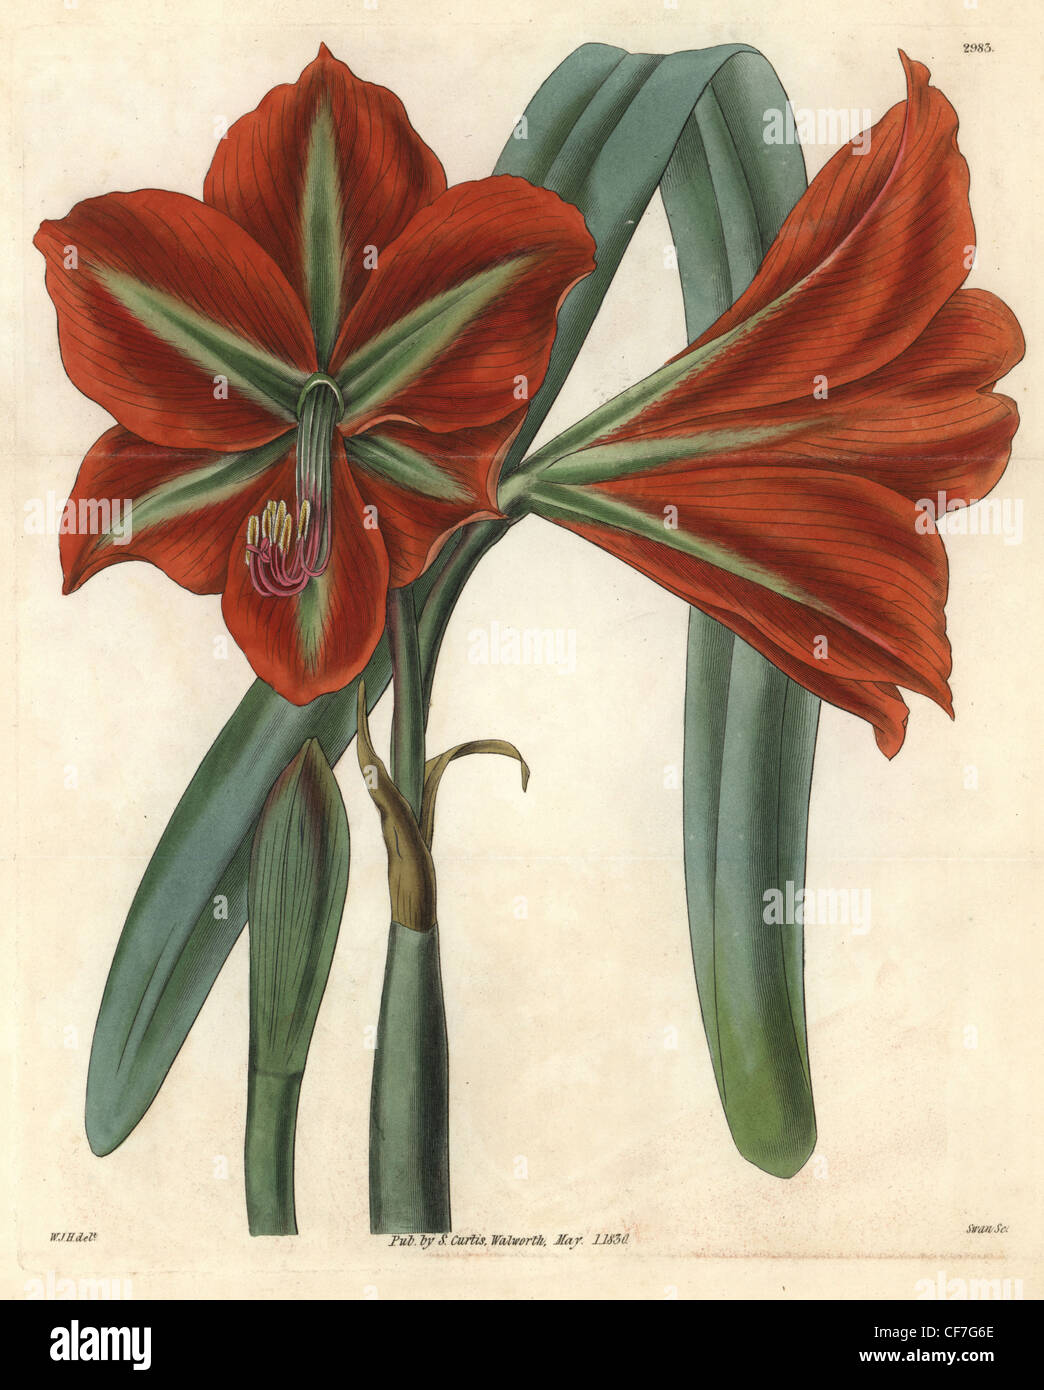 Glaucous-leaved, broad-petaled amaryllis, Amaryllis aulica var. platypetala glaucophylla. Stock Photo